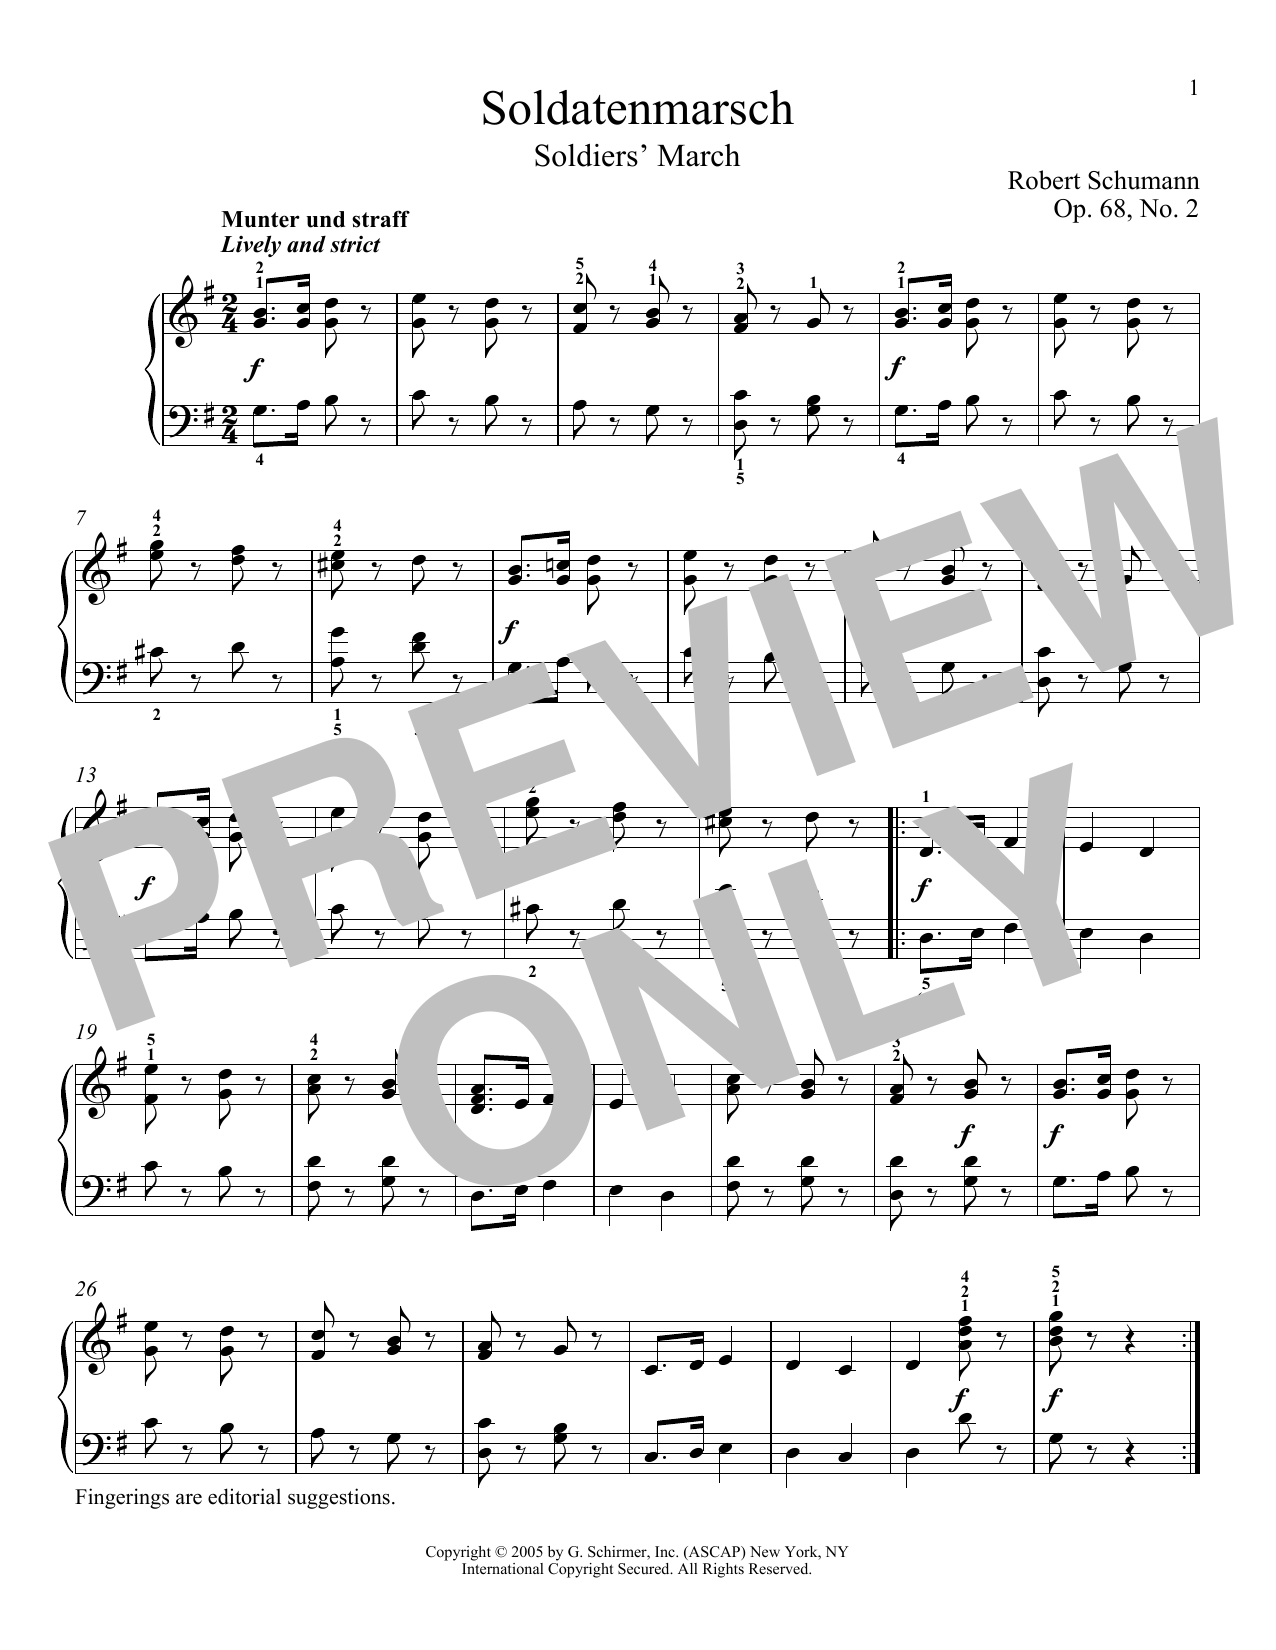 Download Robert Schumann Soldier's March (Soldatenmarsch), Op. 6 Sheet Music